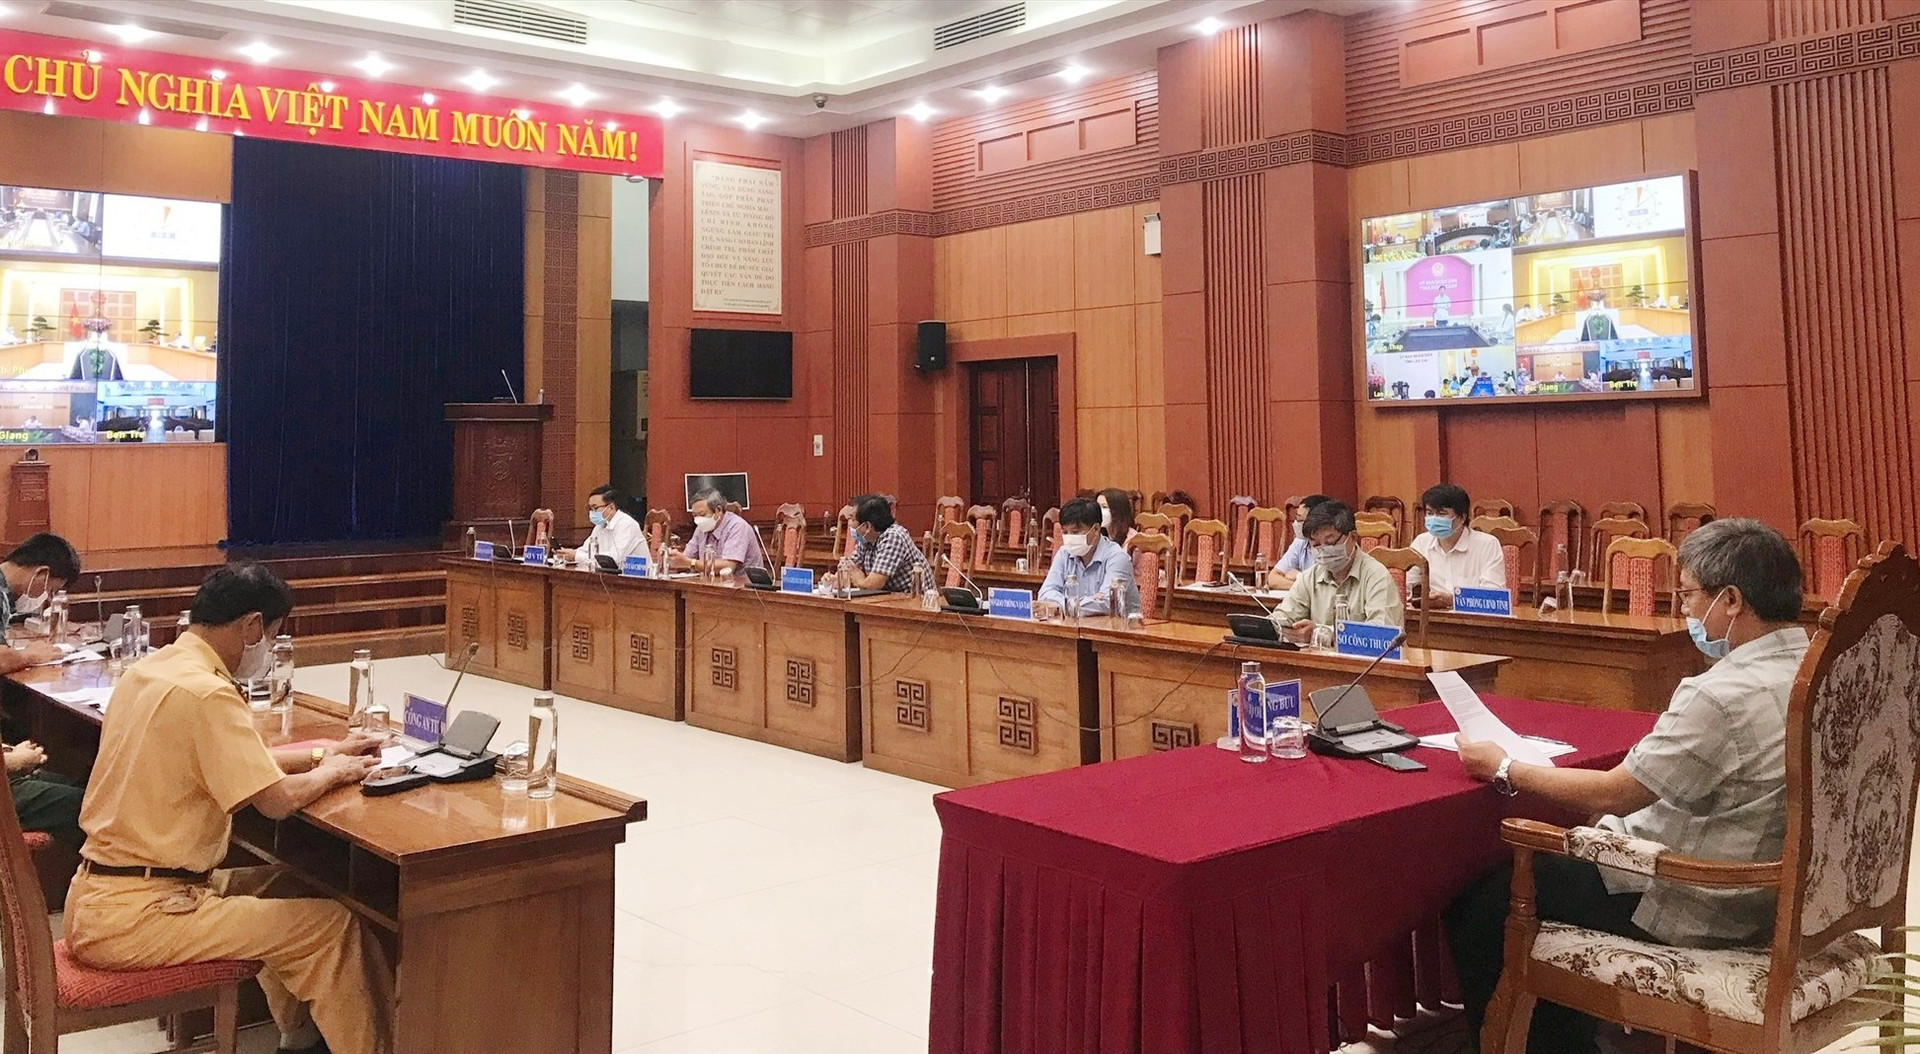 Tham dự hội nghị tại điểm cầu Quảng Nam có Phó Chủ tịch UBND tỉnh Hồ Quang Bửu cùng lãnh đạo các sở, ban ngành liên quan. Ảnh: N.P